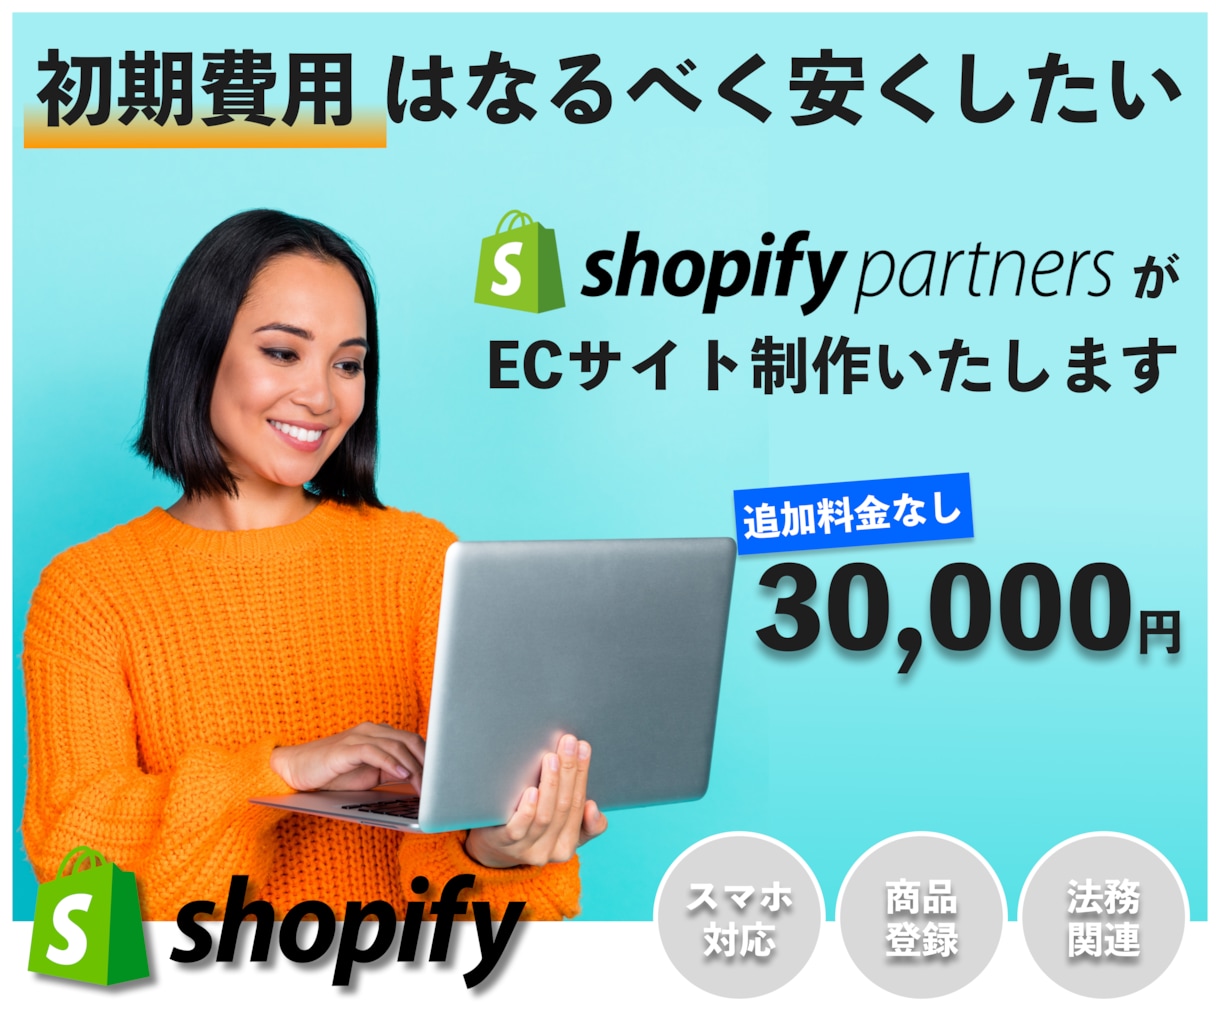 ShopifyでECサイトを制作します ネットショップを始めたいけど初期費用は安くしたい方におすすめ イメージ1